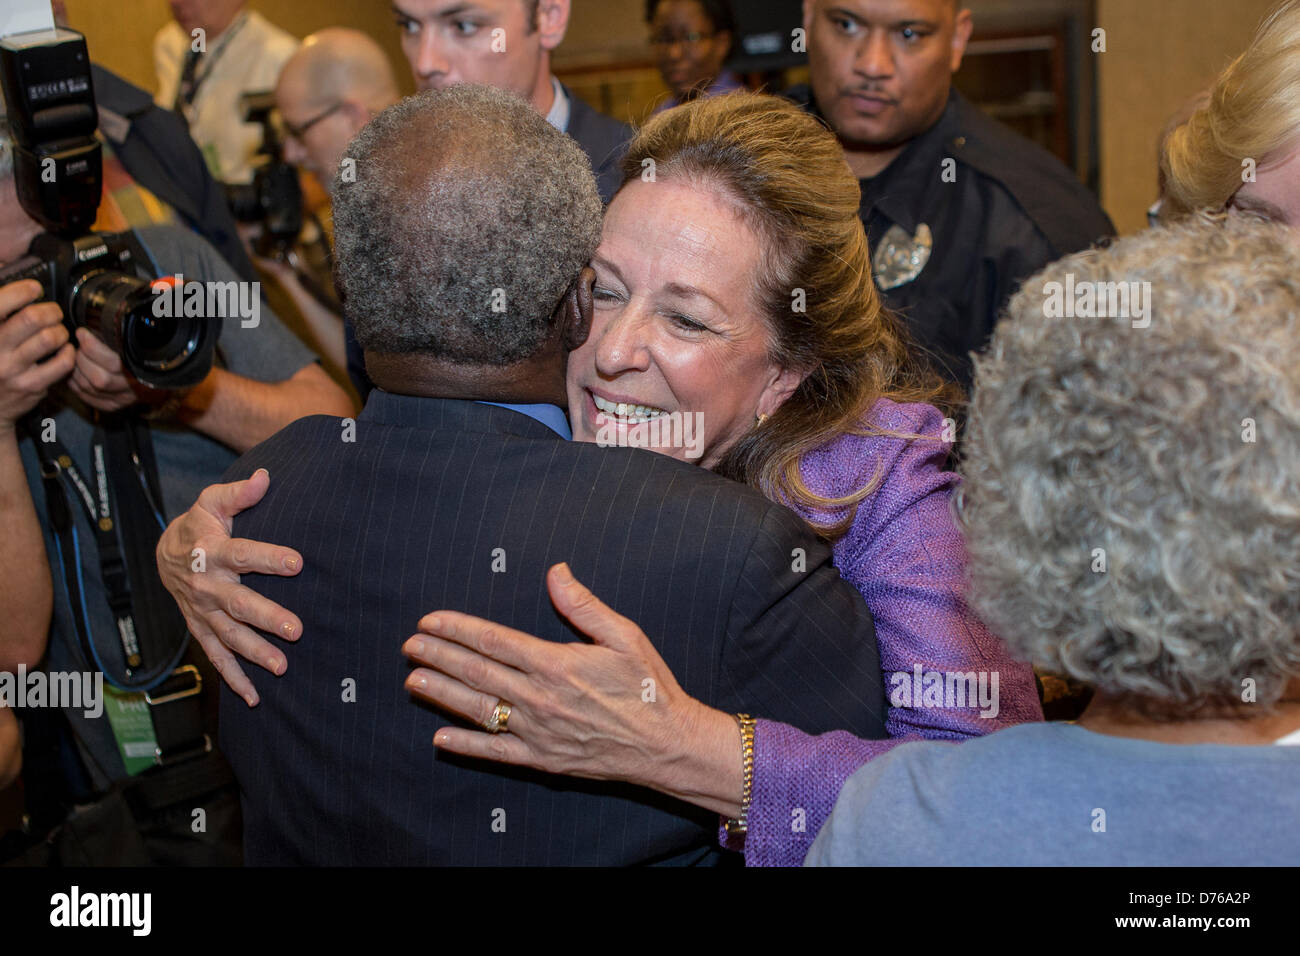 Elizabeth Colbert Busch el candidato demócrata para la curul es abrazado por un partidario tras su debate con el oponente republicano Gov. Mark Sanford en la Ciudadela el 29 de abril de 2013 en Charleston, Carolina del Sur. Foto de stock